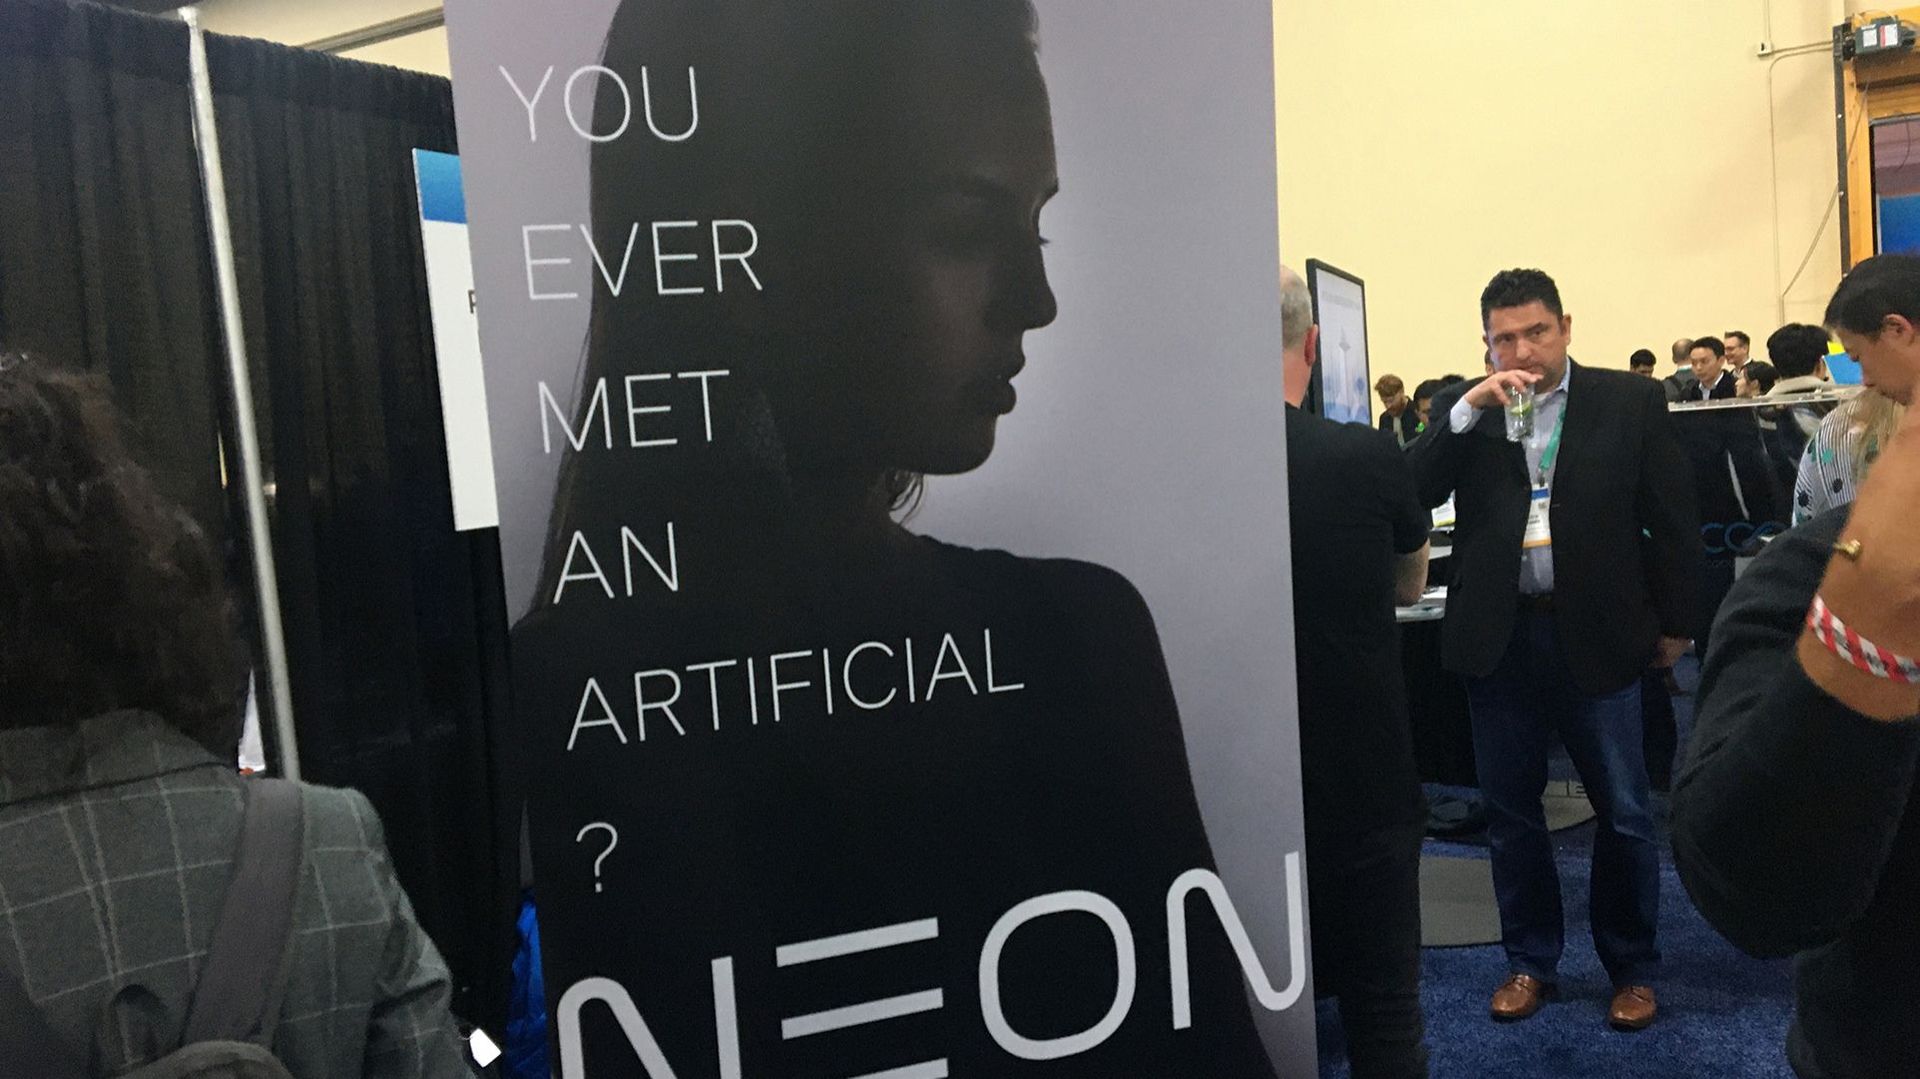 Les "Neons" sont des "êtres virtuels créés sur ordinateur" qui ont "la capacité de montrer des émotions et de l'intelligence", d'après le communiqué diffusé lundi soir en Californie par Star Labs.